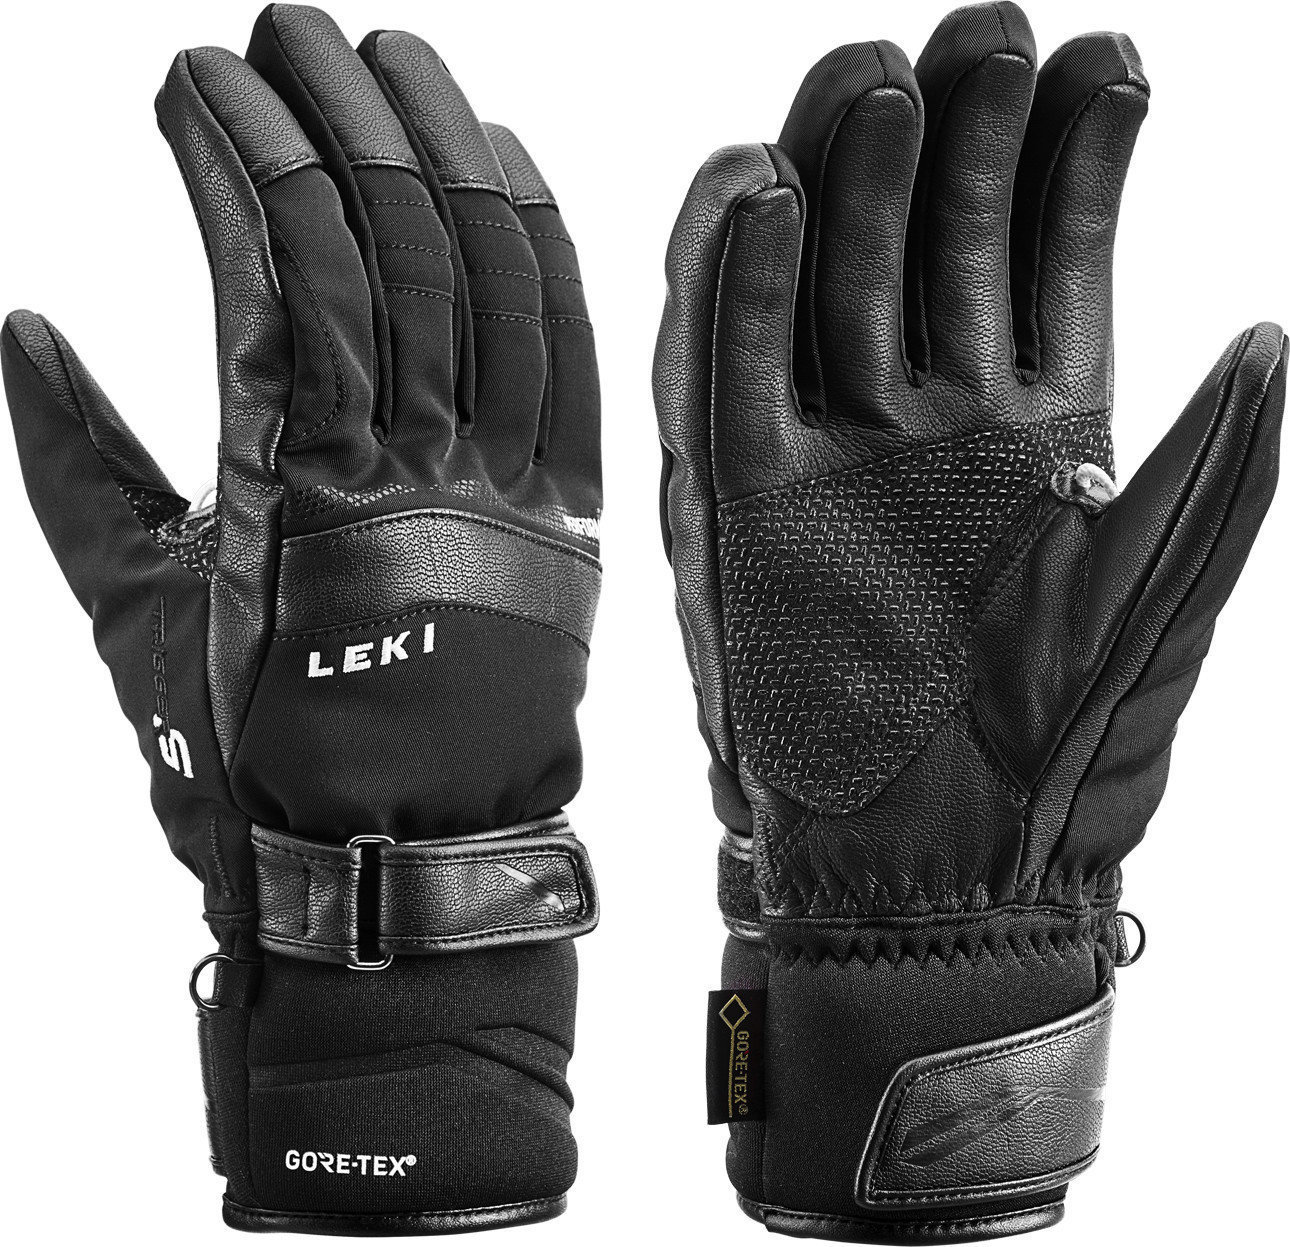 Skijaške rukavice Leki Performance S GTX Black 8,5 Skijaške rukavice